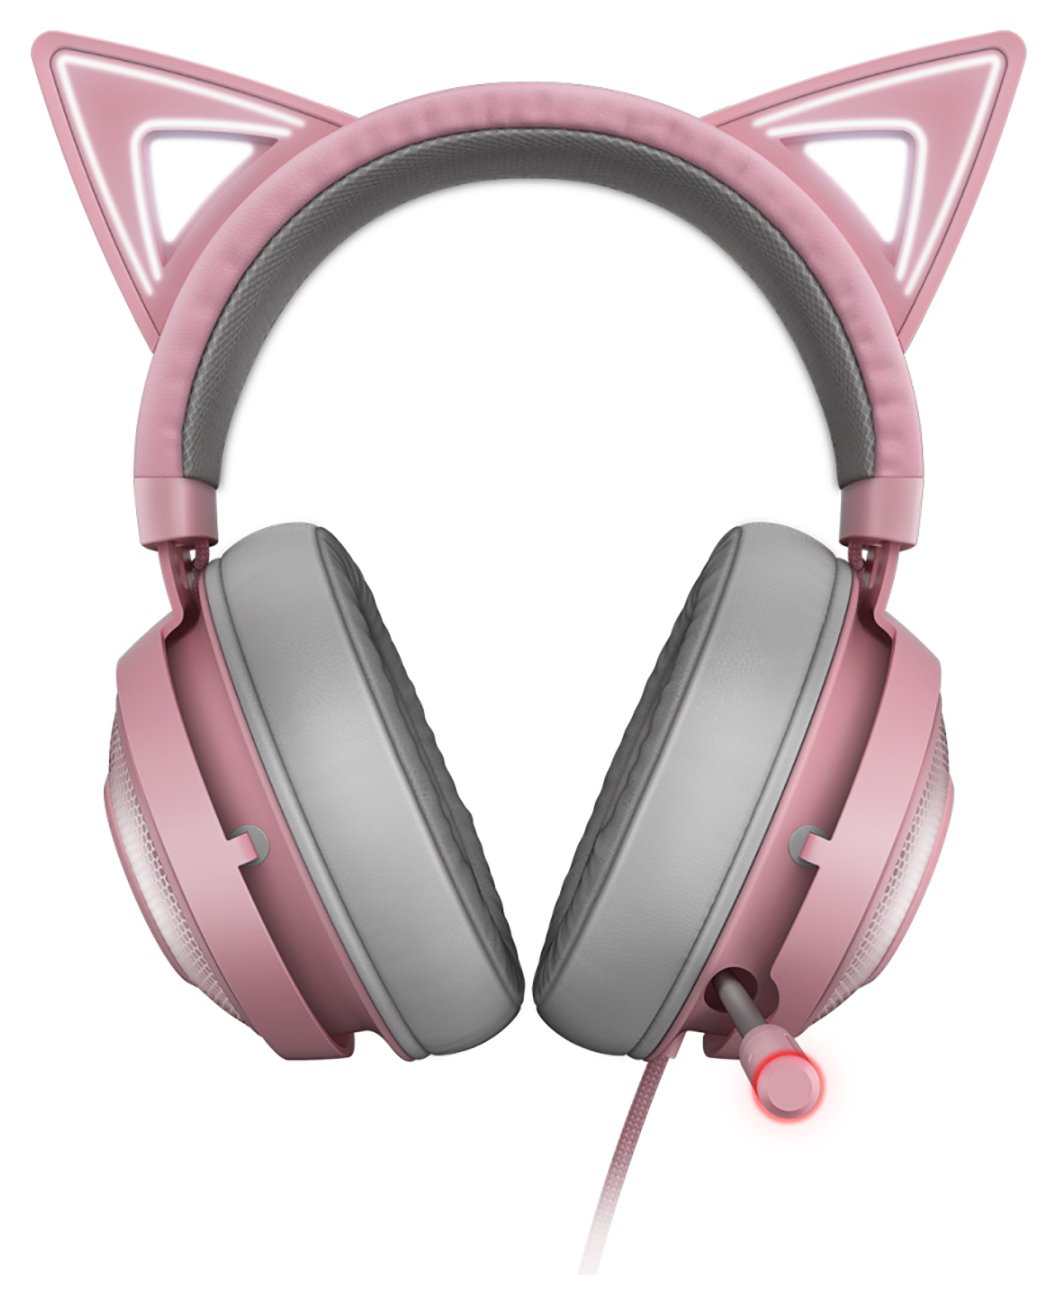 Razer Kraken Kitty Wired Gaming Headset - Pink